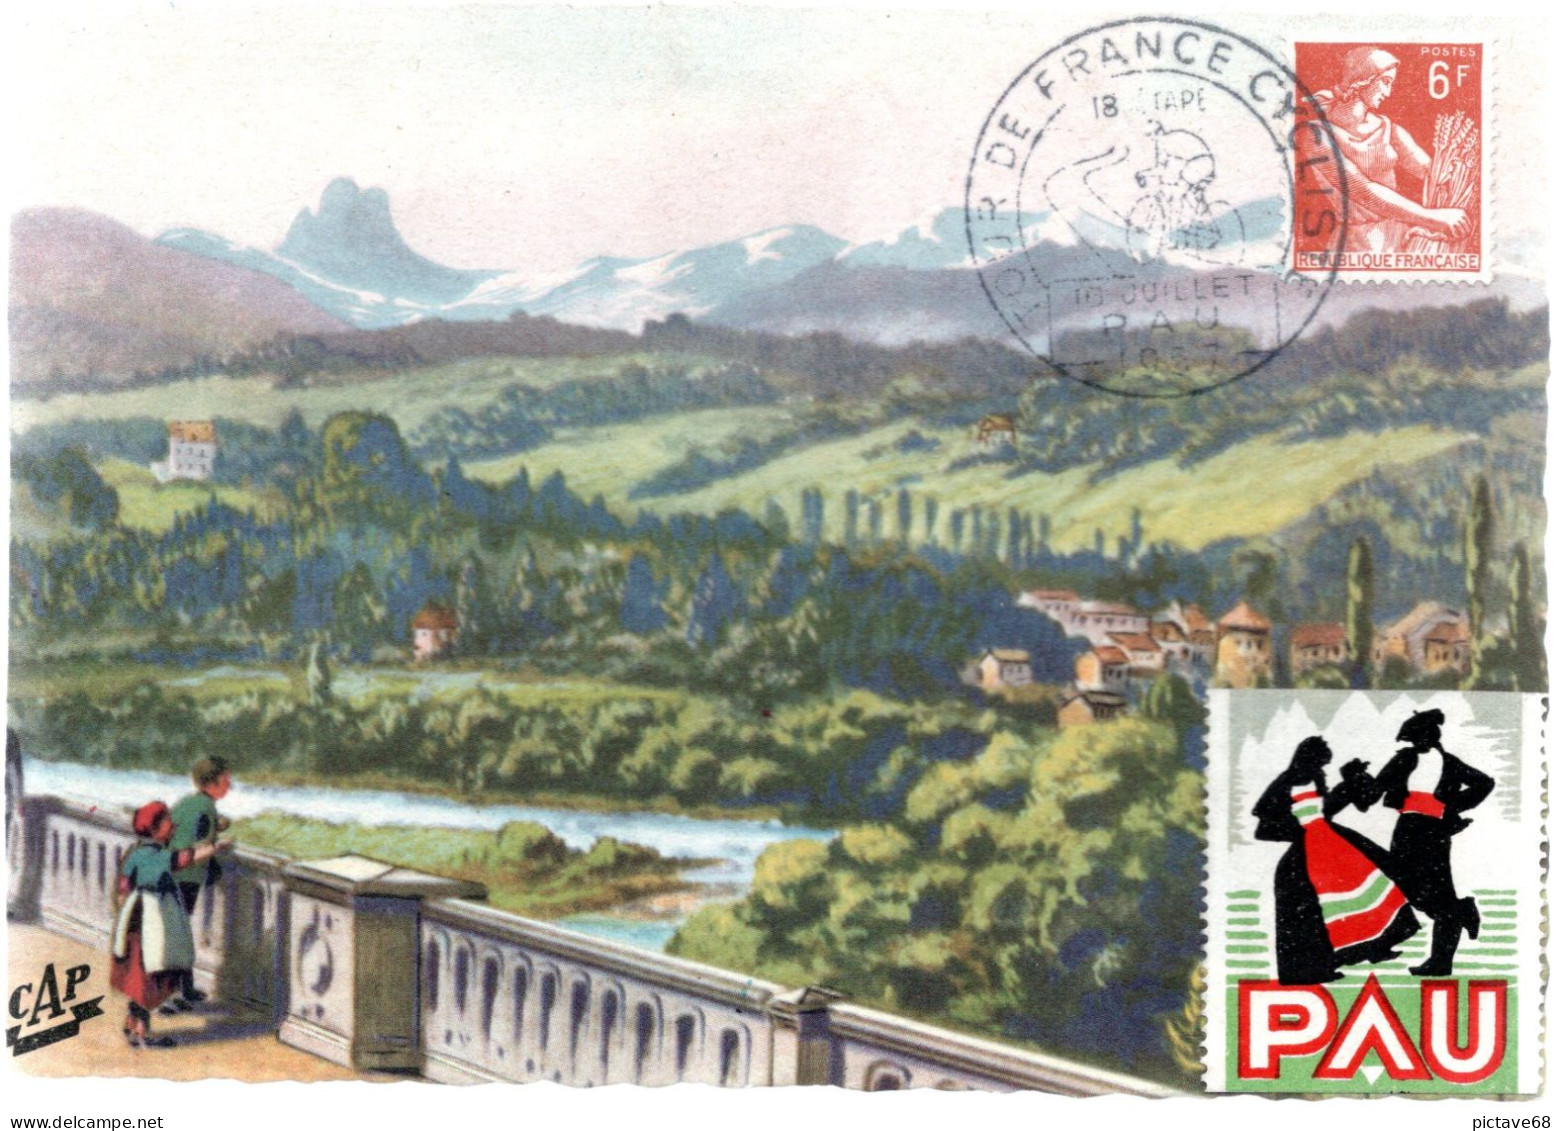 FRANCE / CYCLISME / TOUR DE FRANCE / CARTE COMMEMORATIVE DU TOUR DE FRANCE 1957 ETAPE DE PAU - Cyclisme